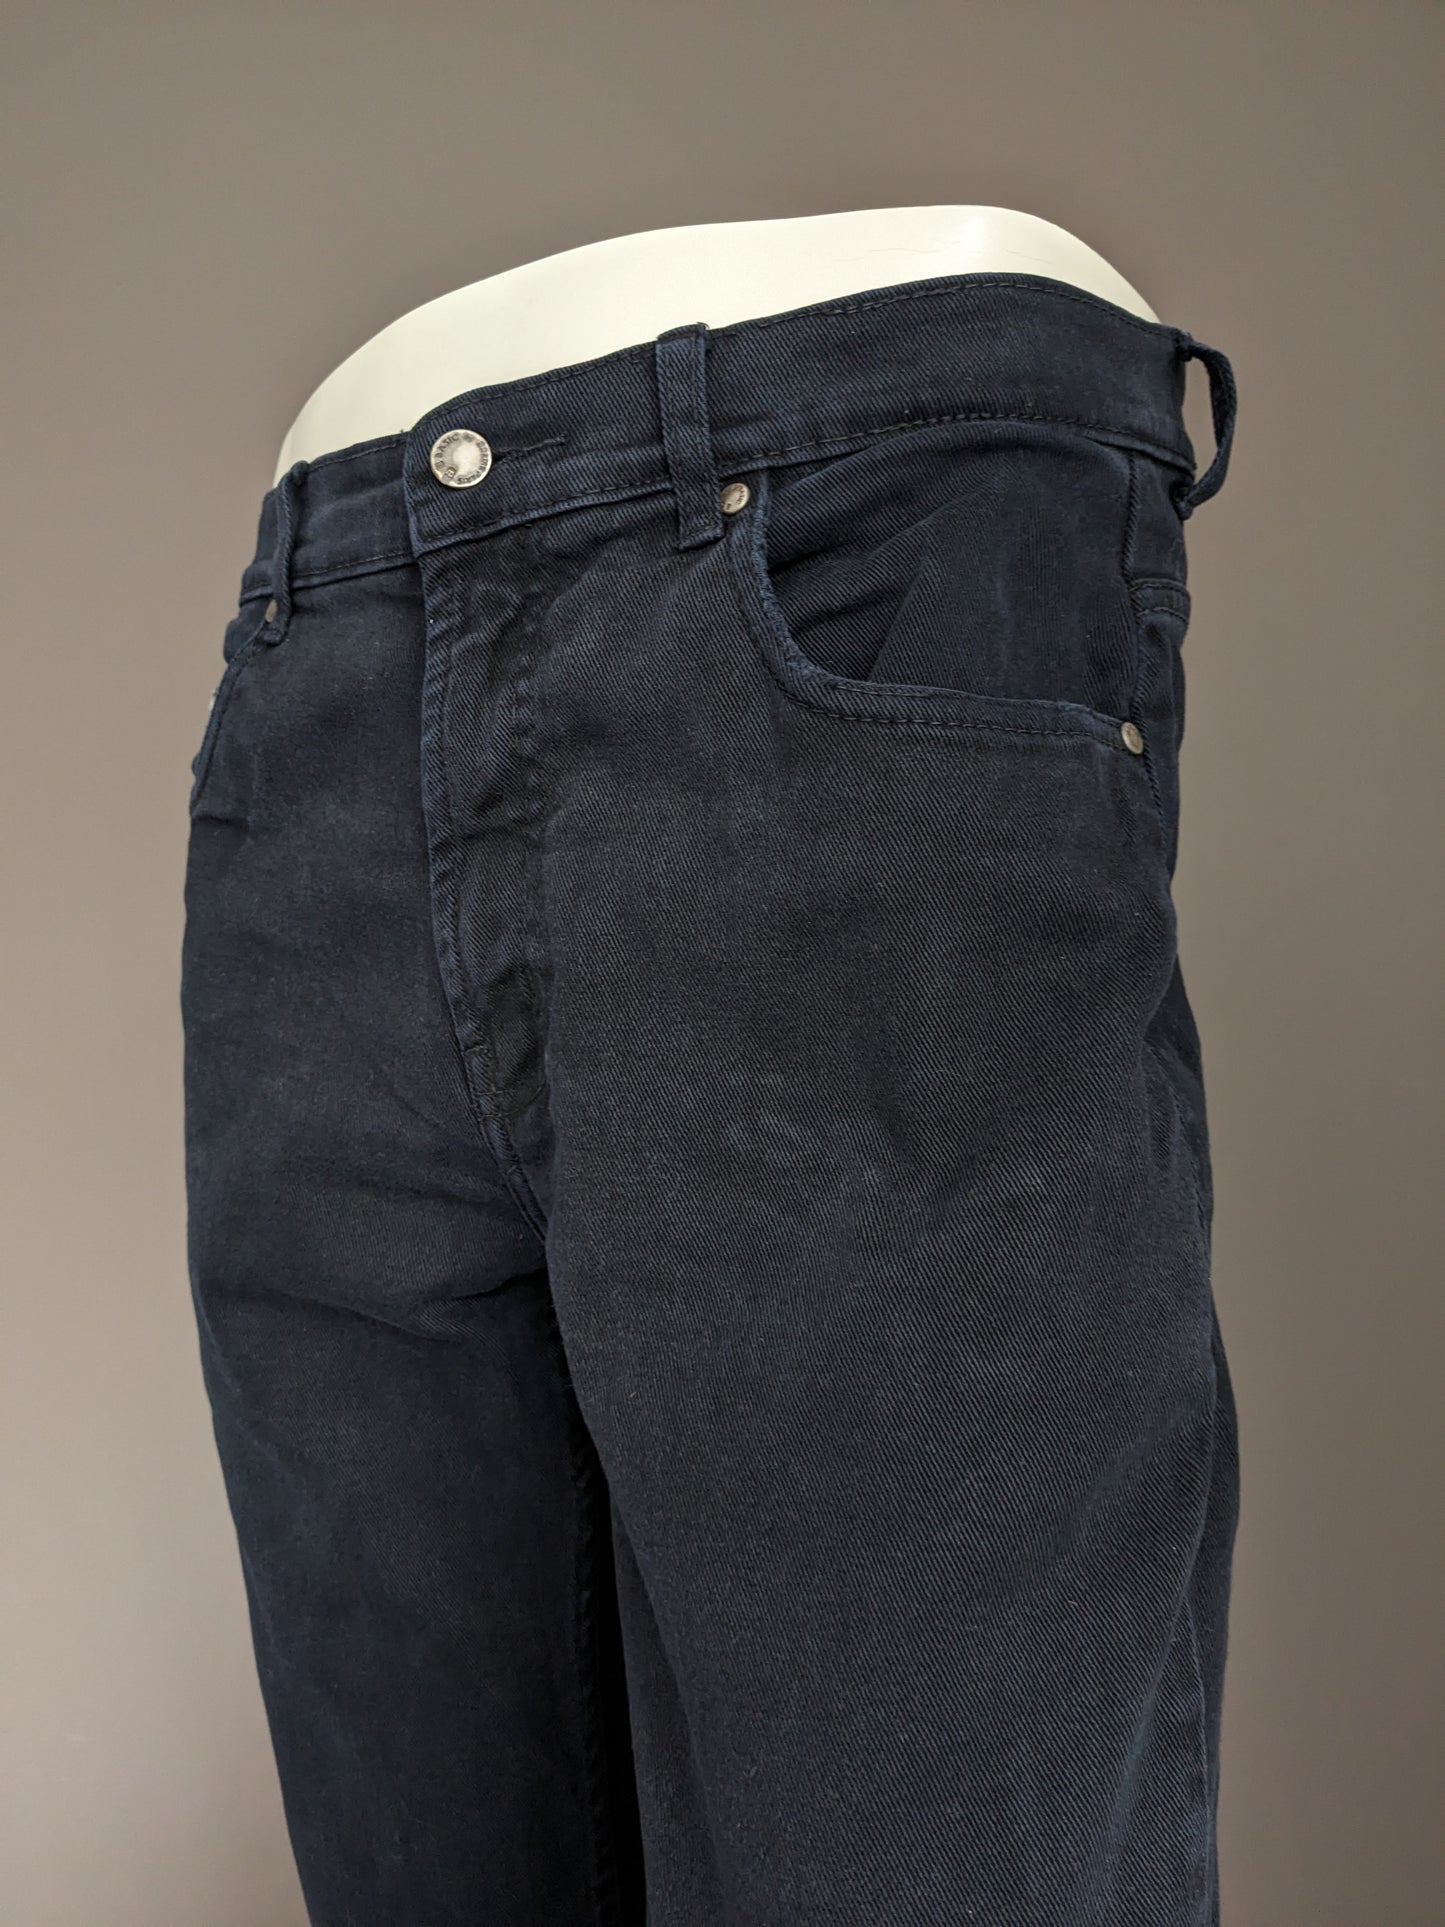 B Basic por Brams Paris Jeans. Color negro. Tamaño W34 - L34. Conflexión de comodidad. estirar.